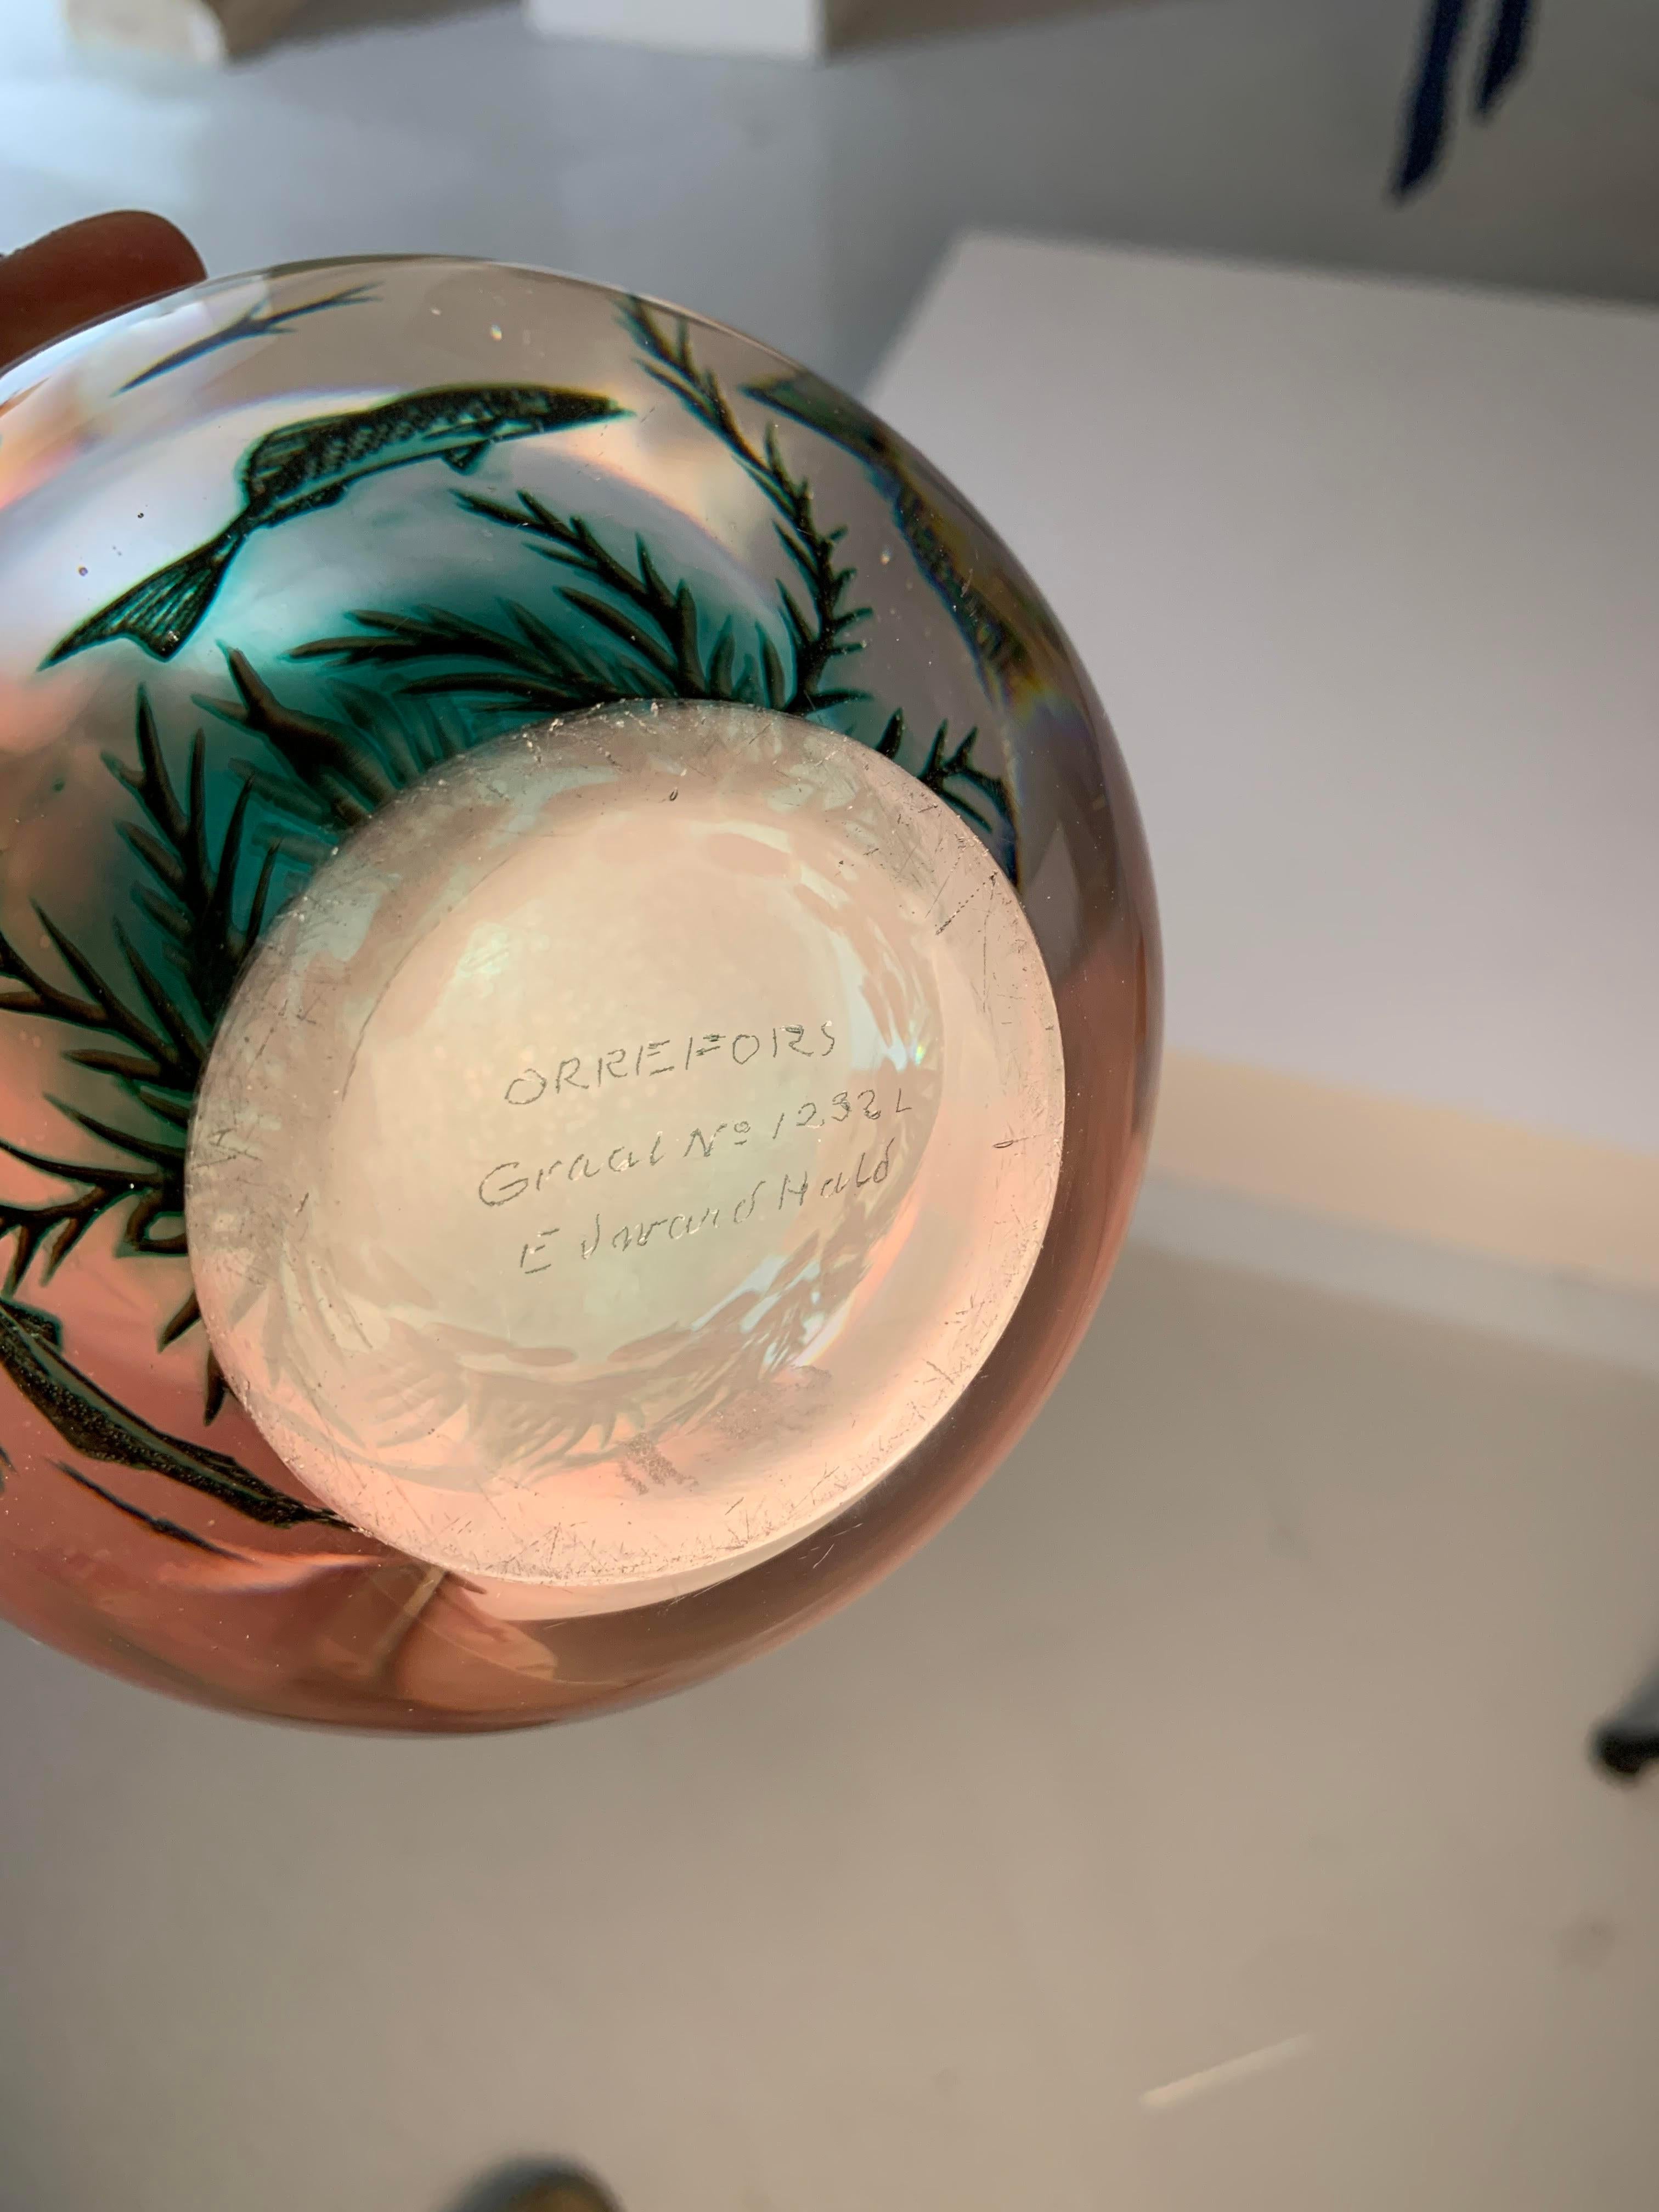 l jarrón sueco Fiskgraal Aquamarine de Edward Hald para Orrefors, de los años 50, es una pieza única de arte y artesanía. Su carácter distintivo reside en el delicado equilibrio entre su exquisito diseño y la innovadora técnica graal empleada en su